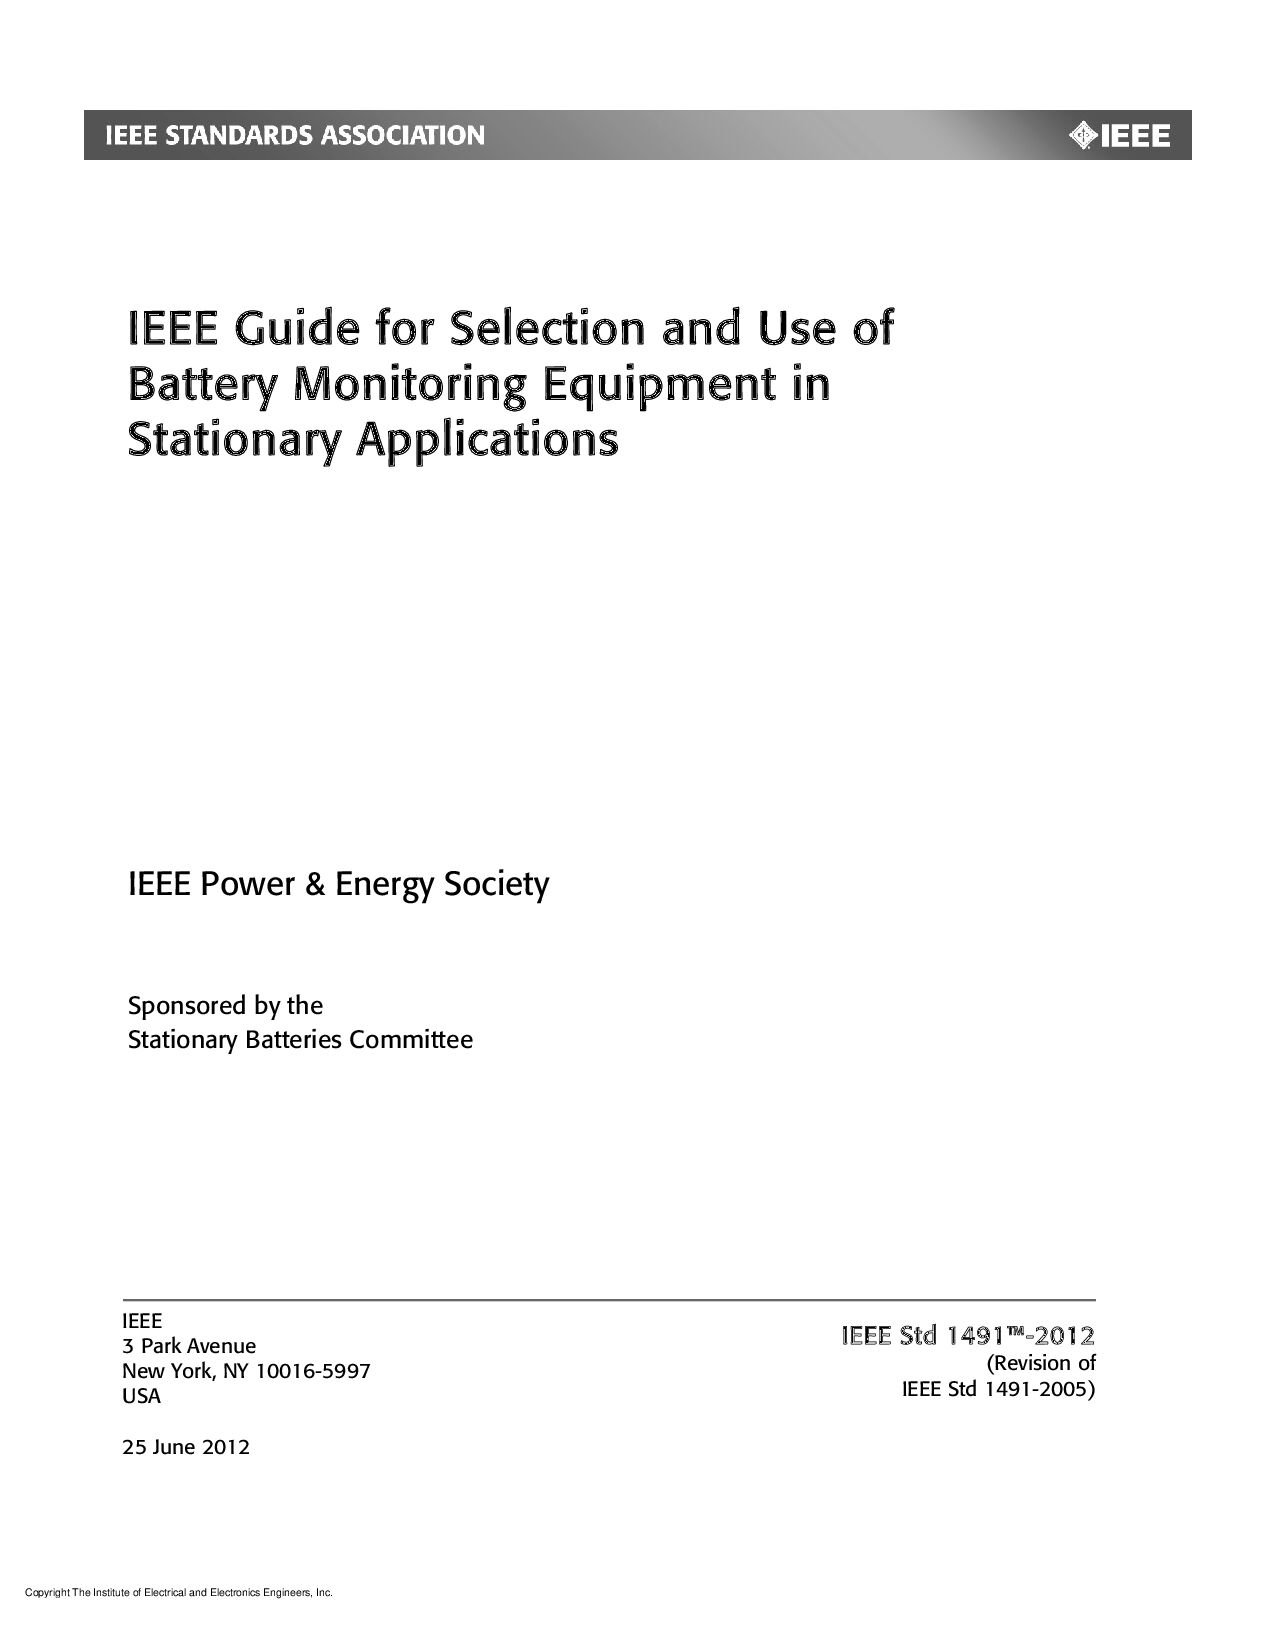 IEEE 1491-2012